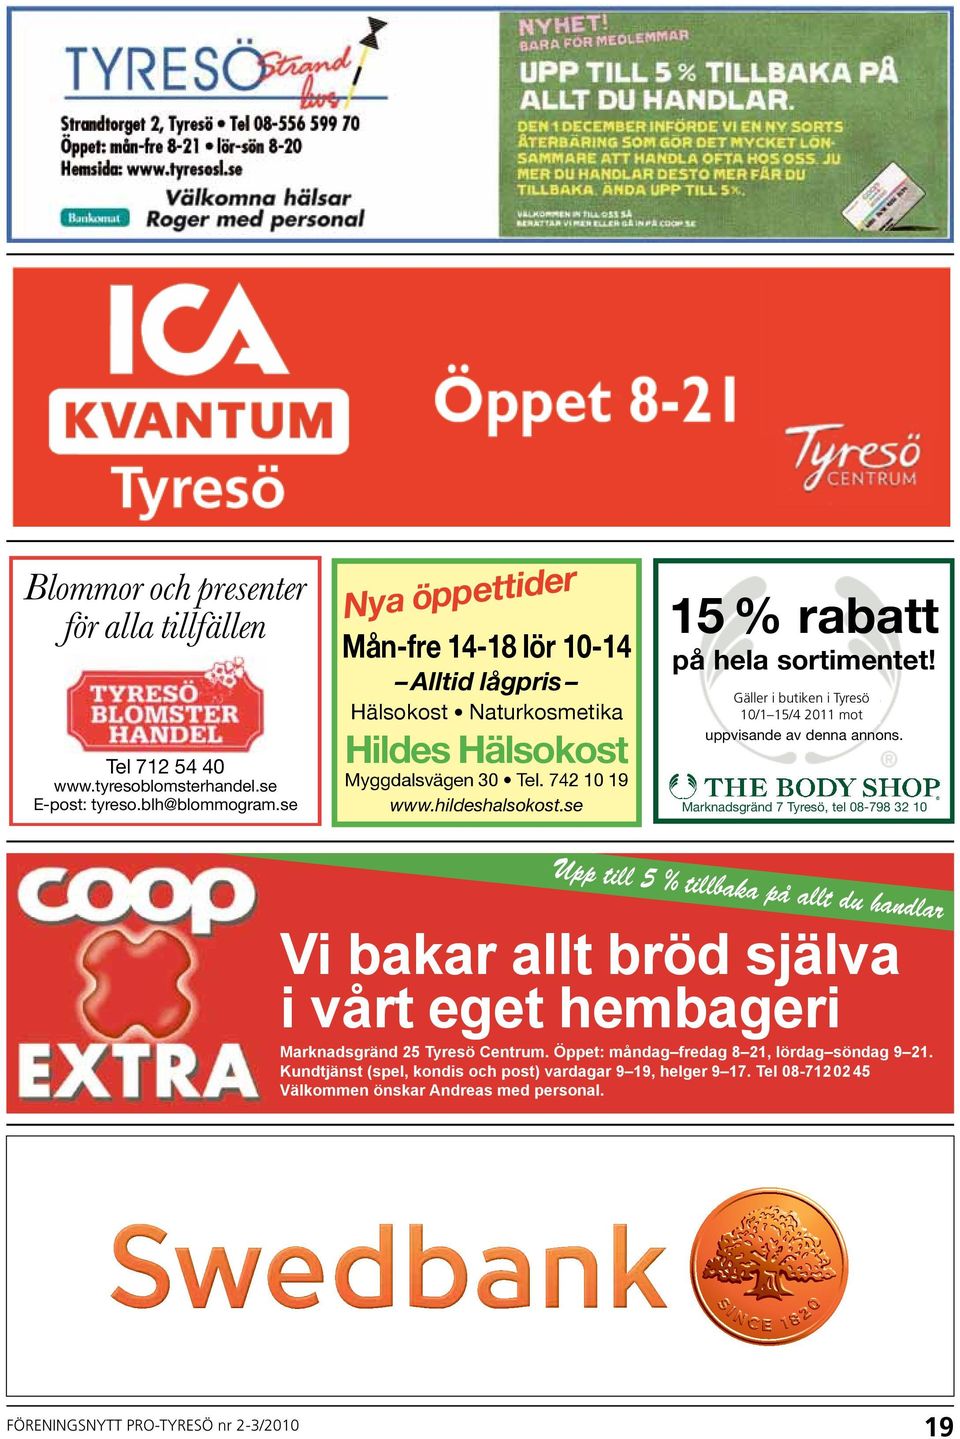 Gäller i butiken i i Tyresö t.o.m. 10/1 15/4 31/10-04 2011 mot uppvisande av denna annons.